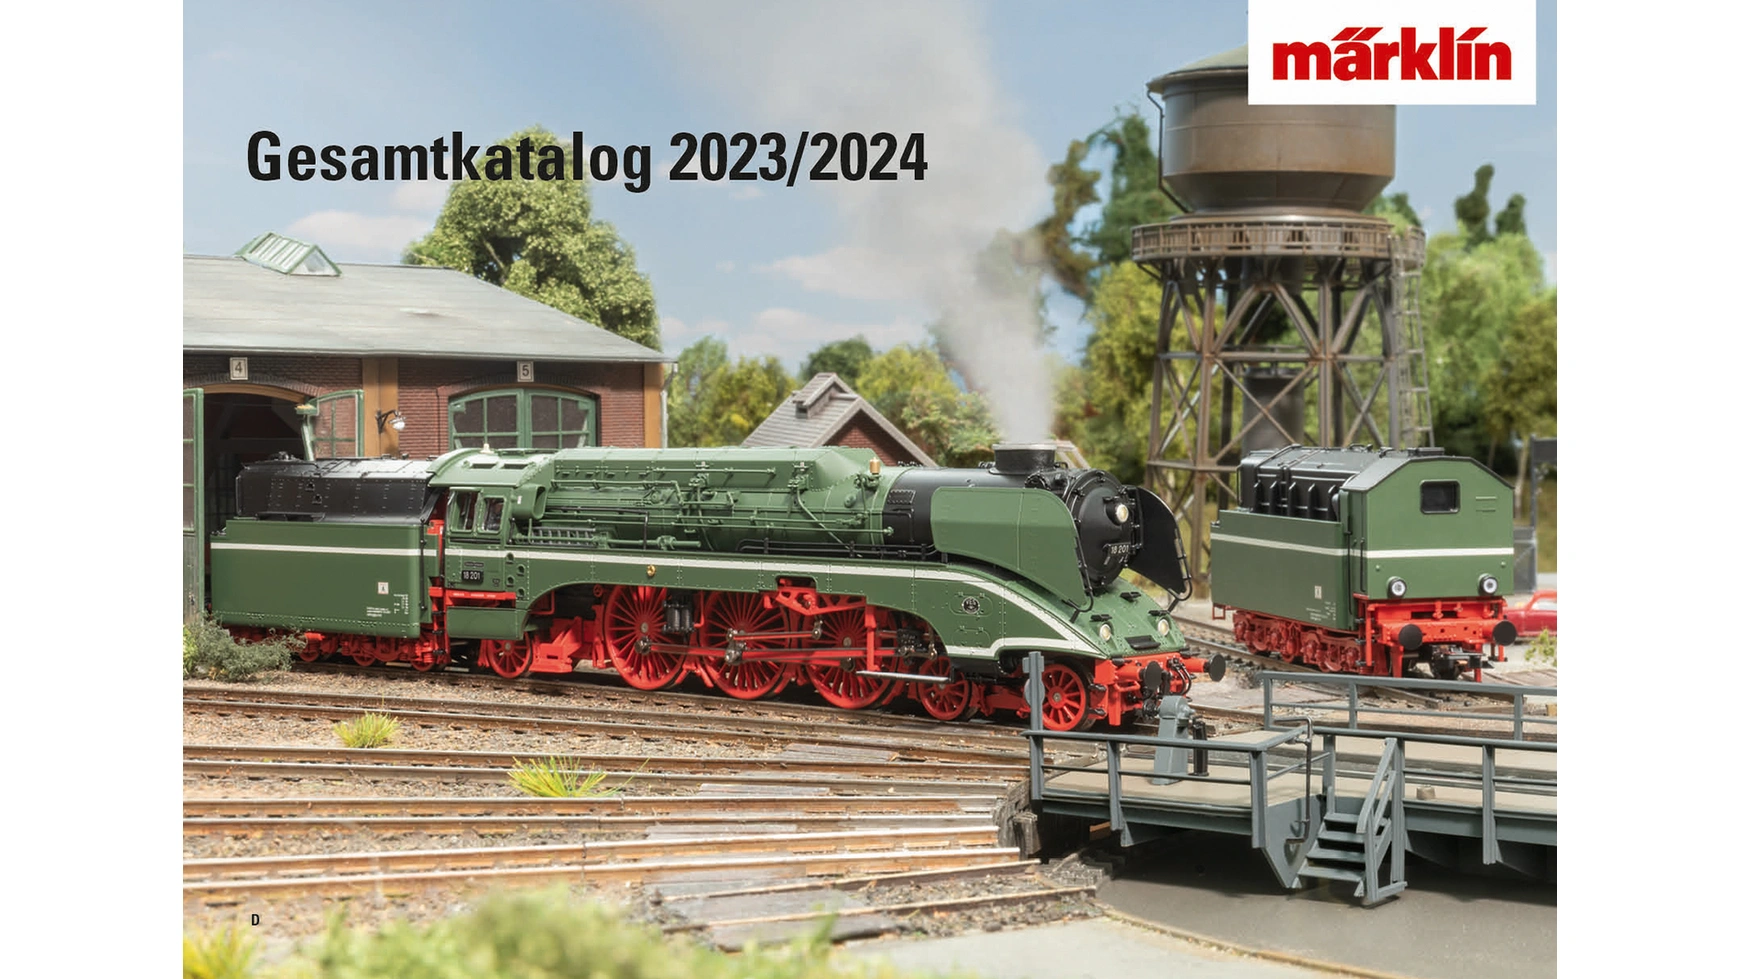 Каталог моделей железных дорог 2023/2024, немецкое издание Märklin